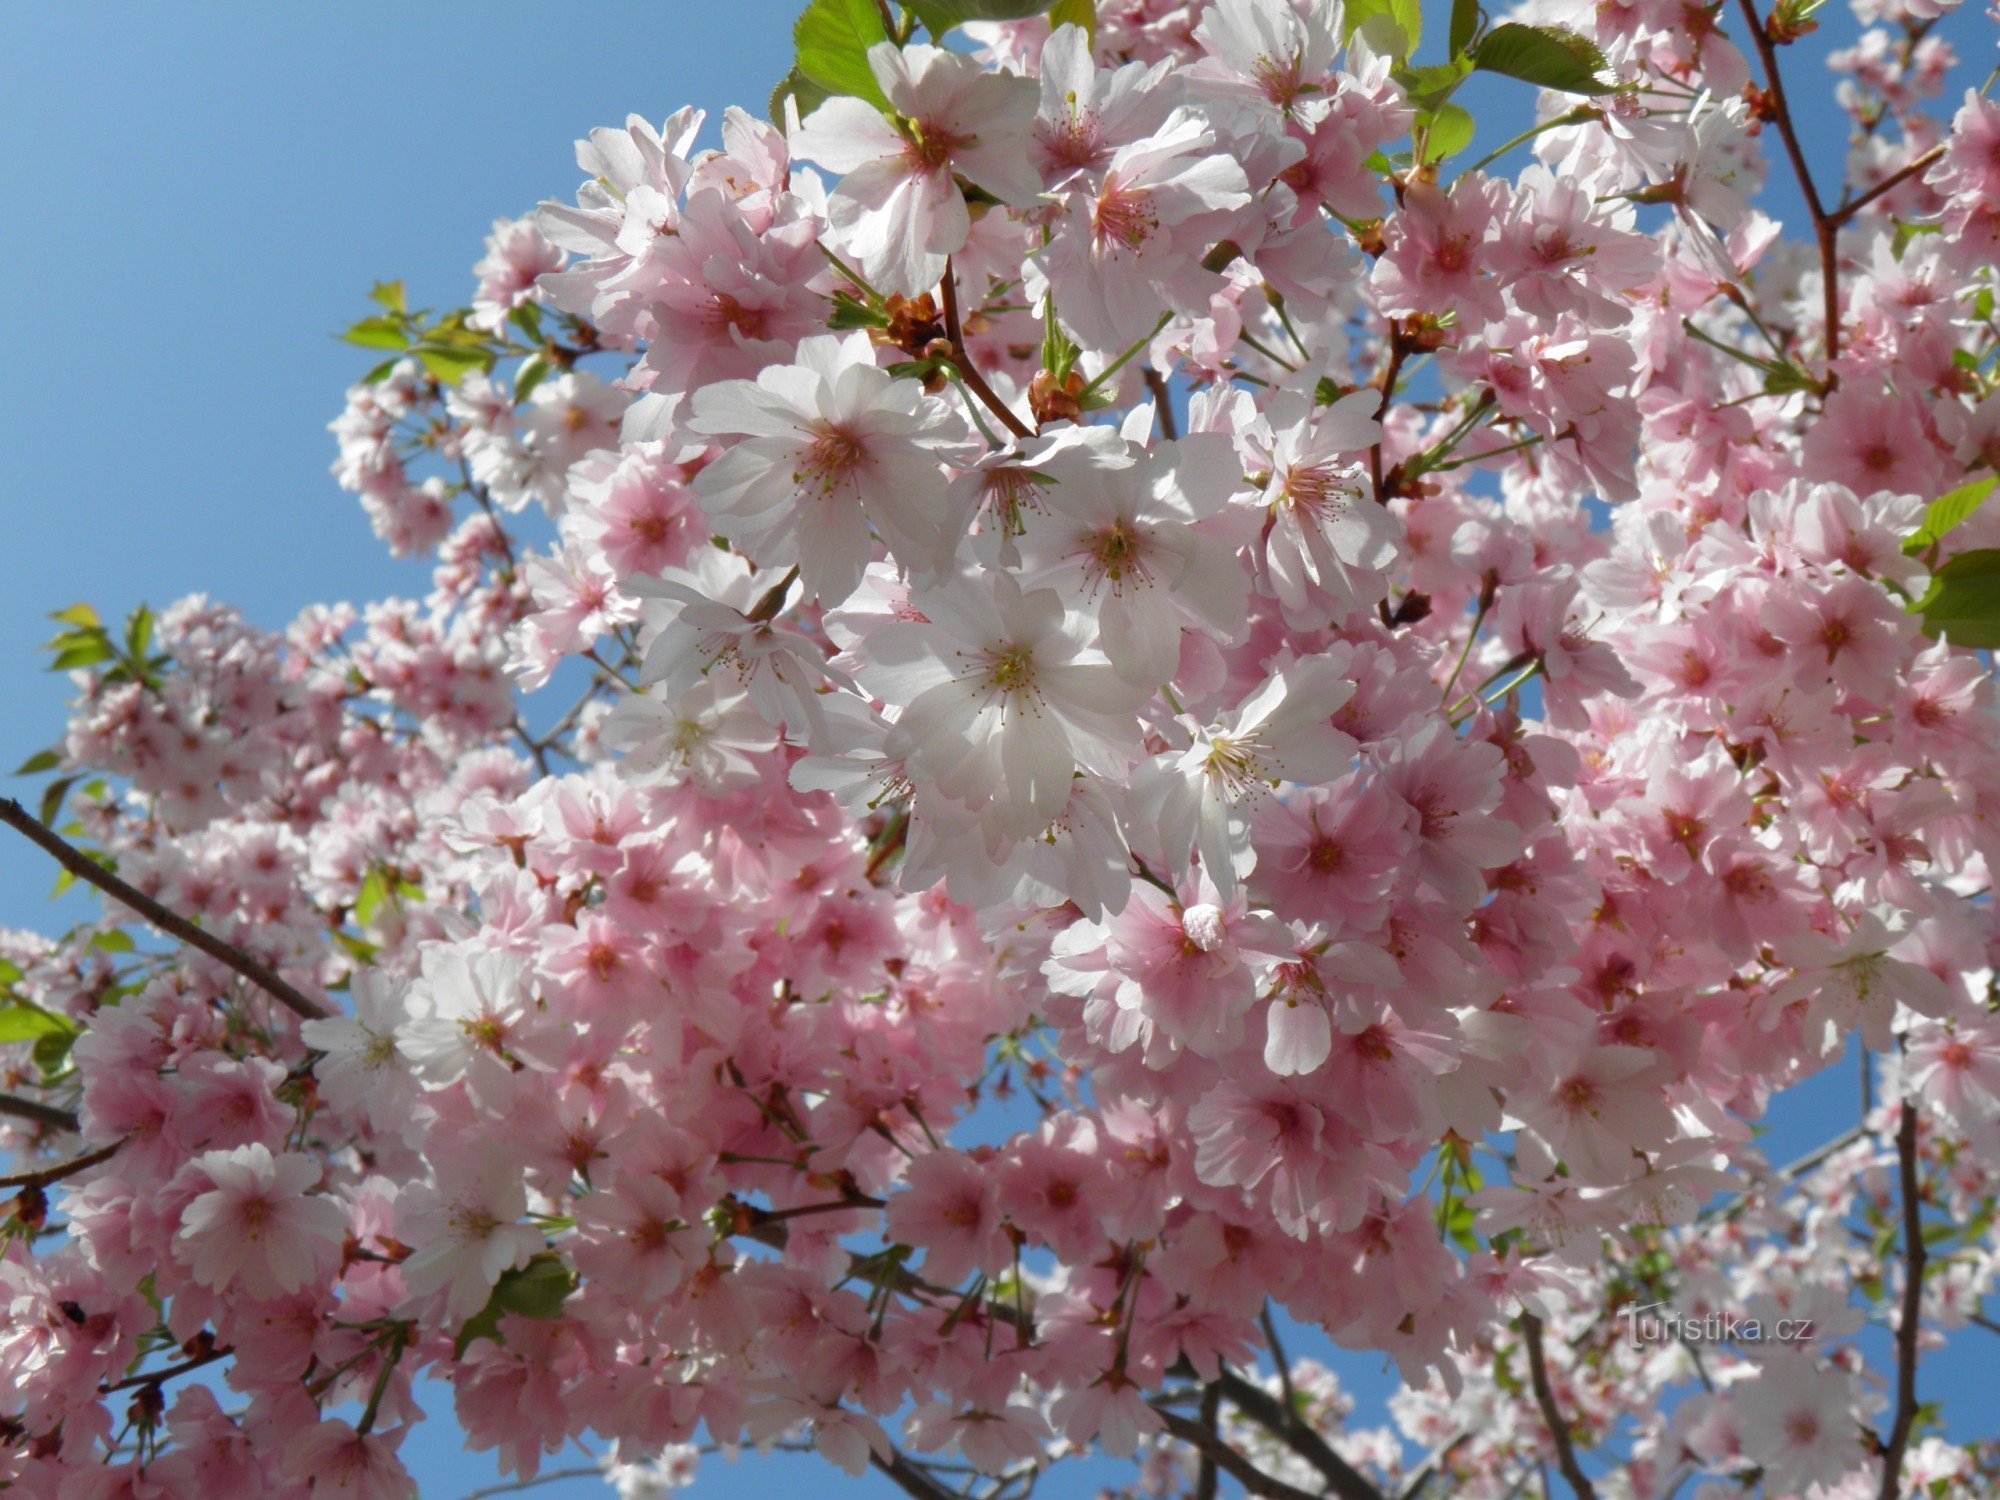 ポジェブラディのスパ コロネードに咲く桜。